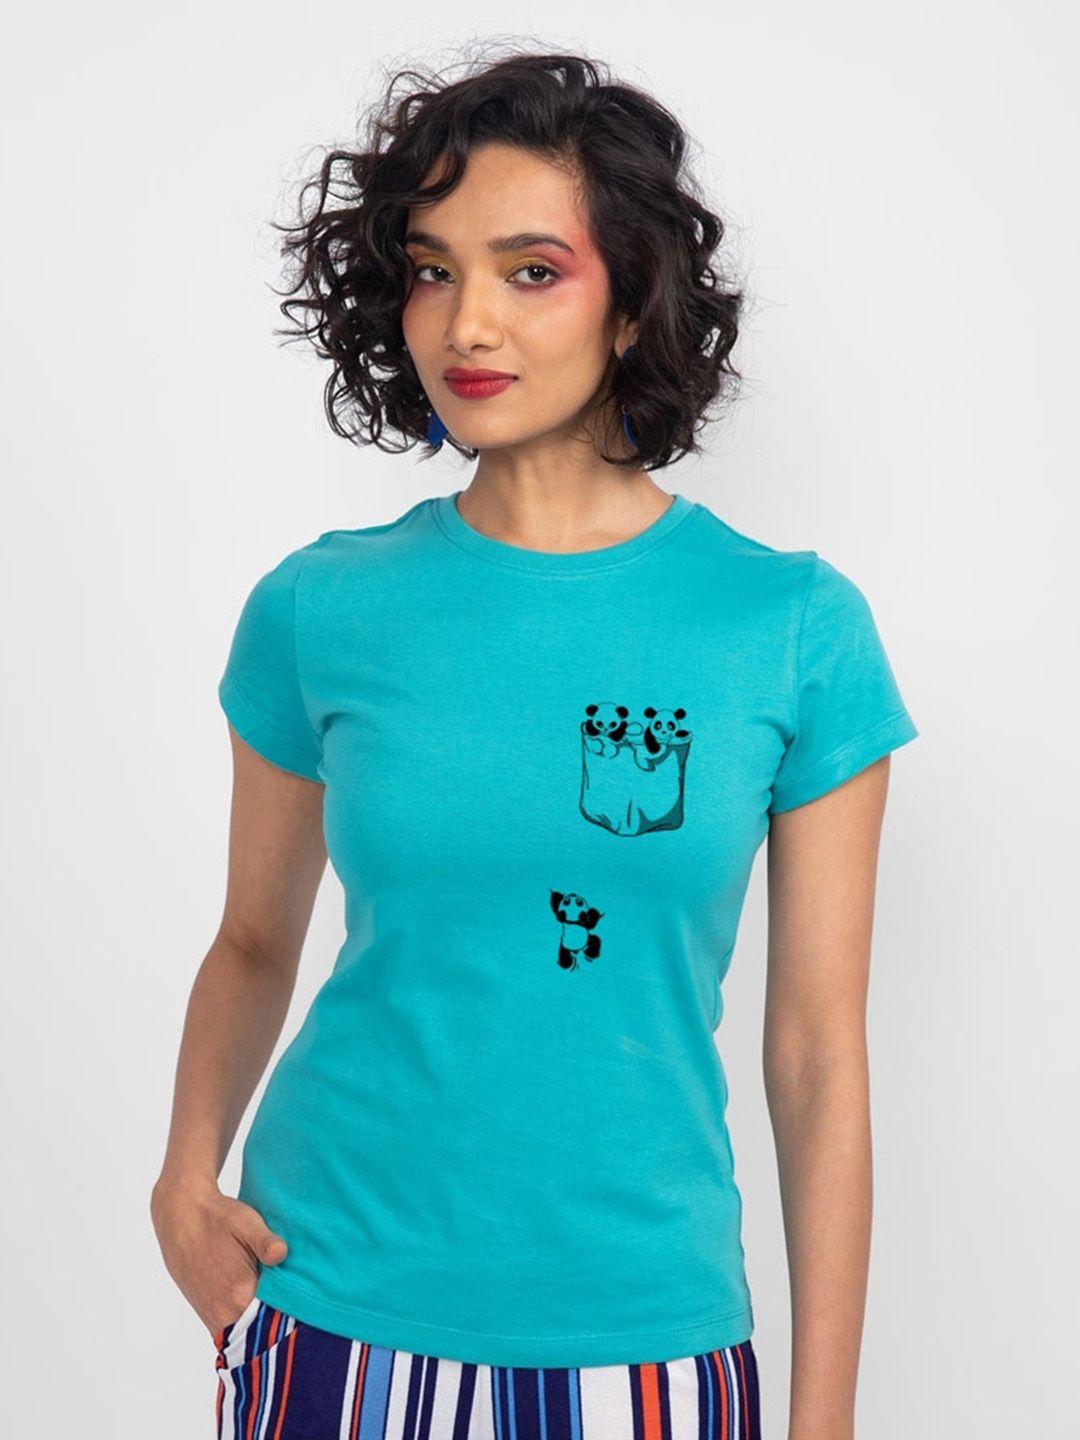 bewakoof-women-printed-cotton-t-shirt